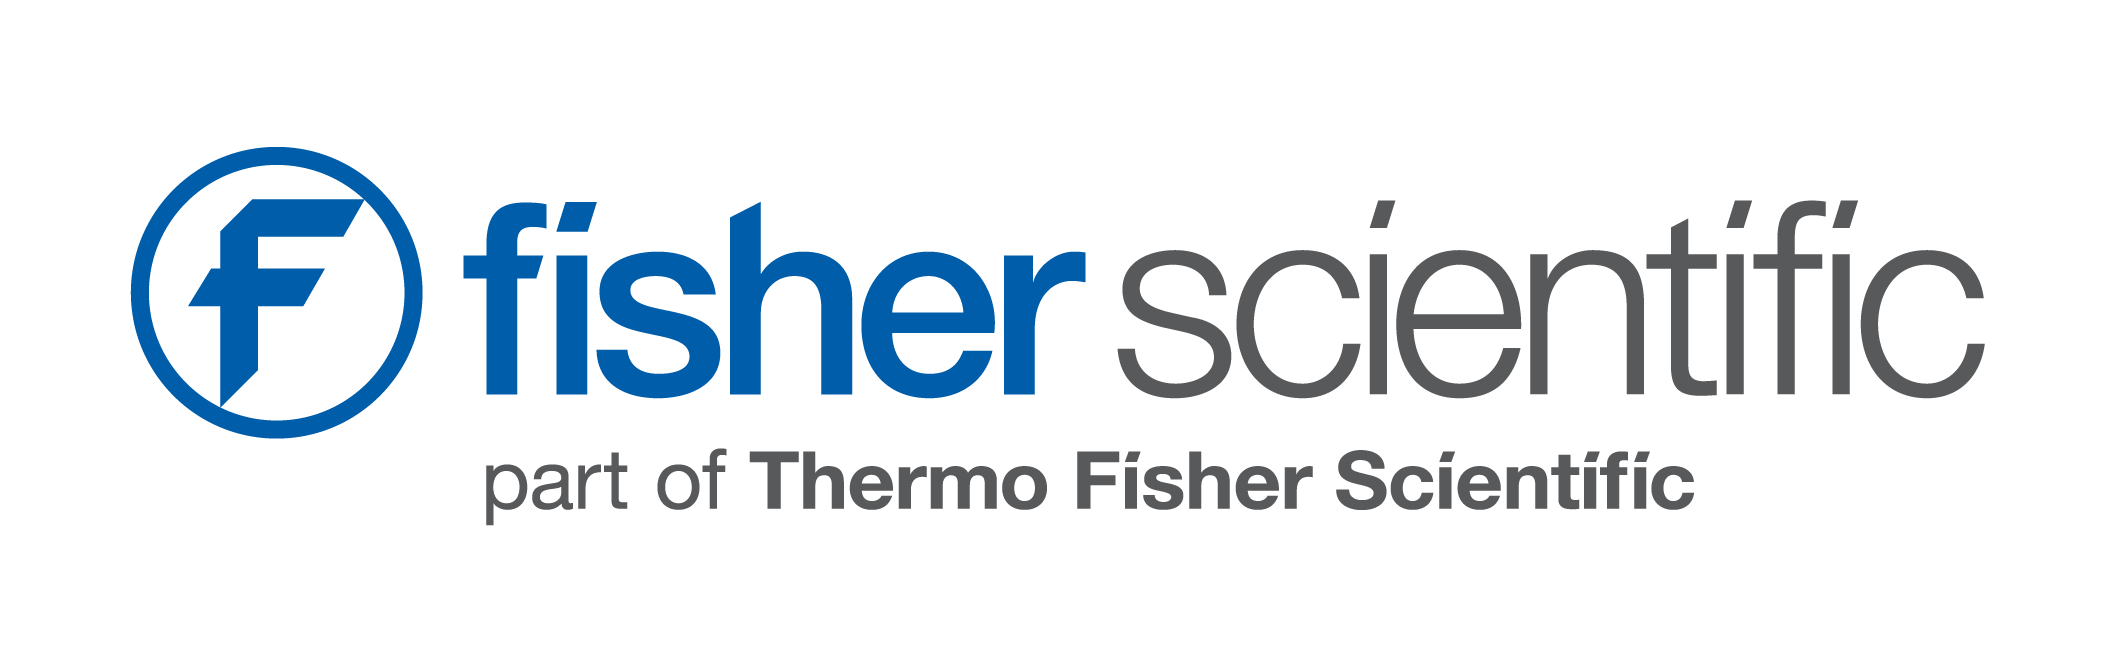 Fisher Scientific, a division of Thermo Fisher Scientific